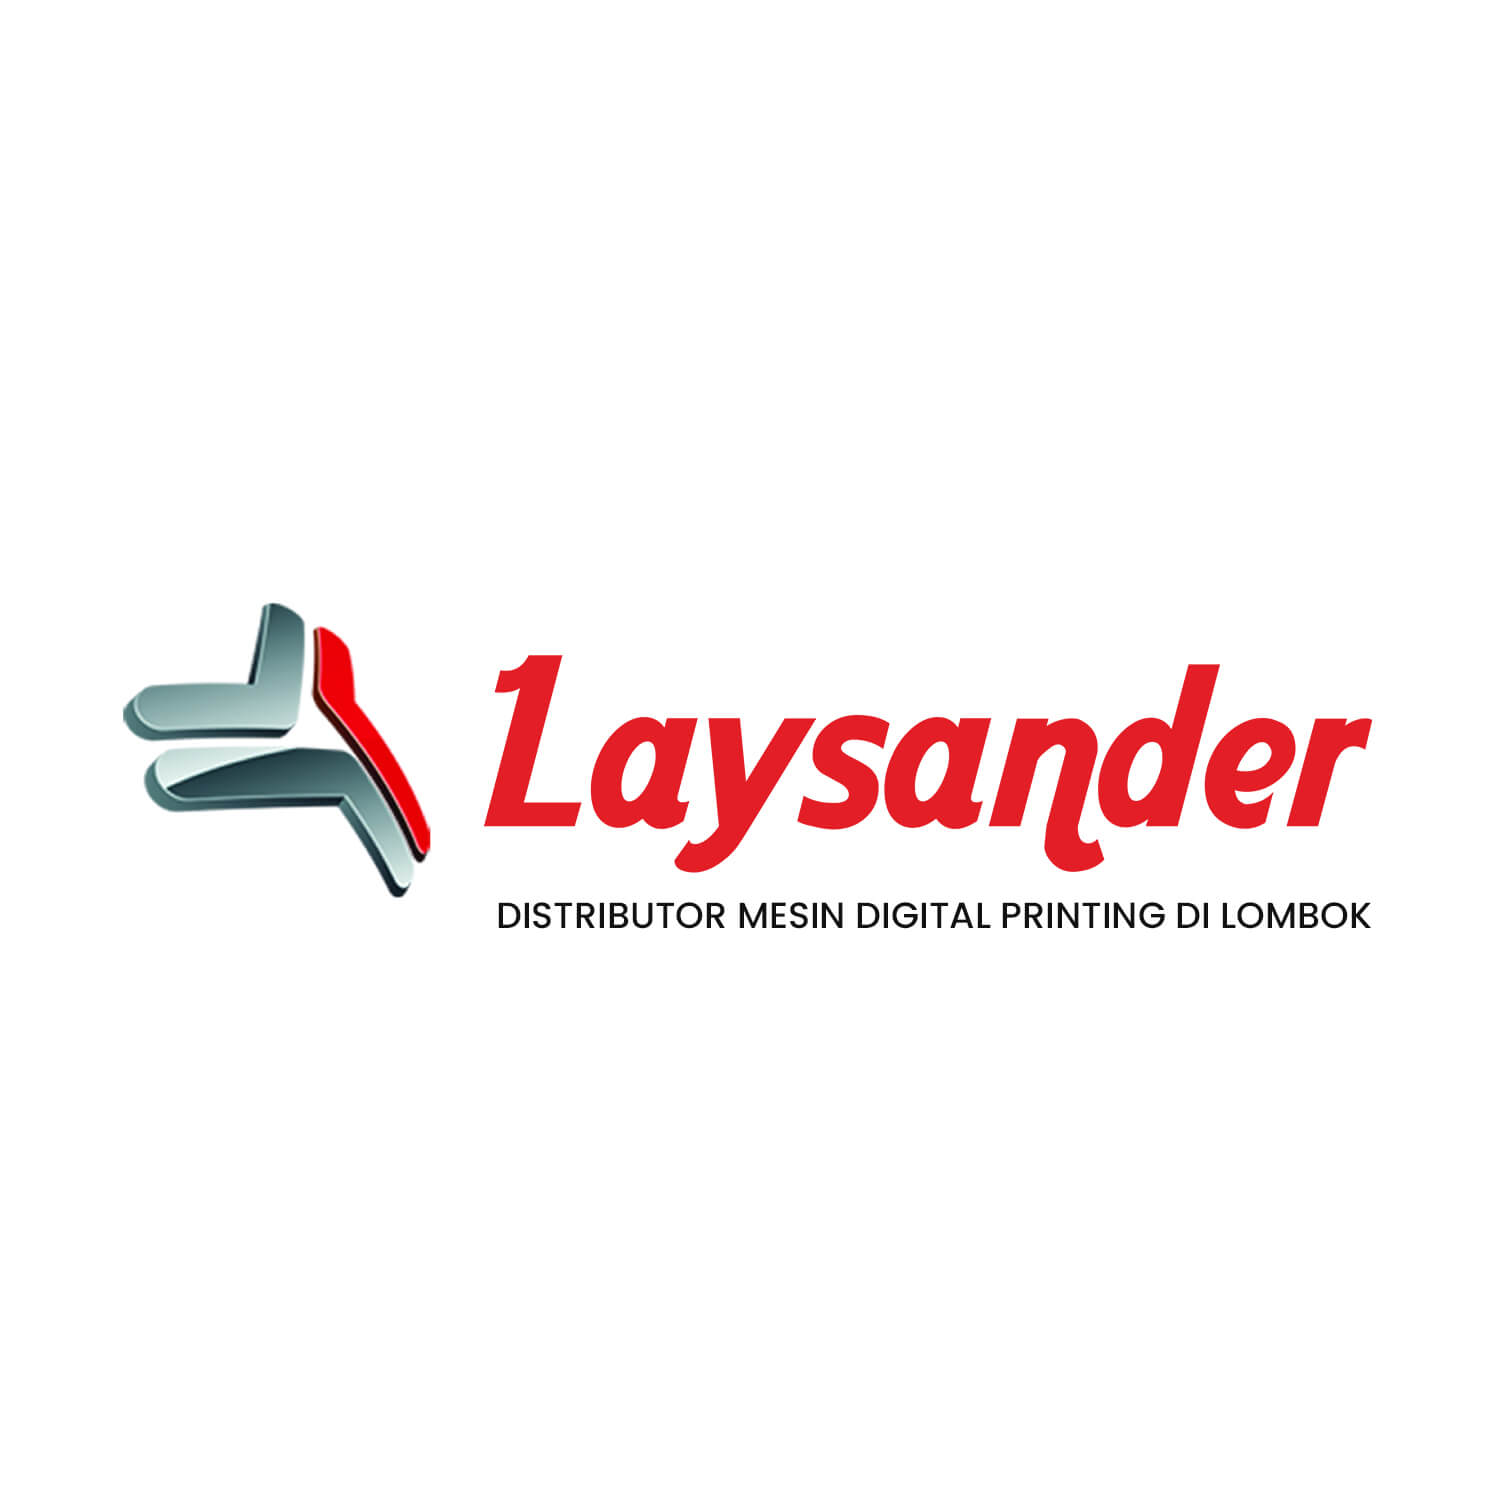 Laysander: Distributor Mesin Digital Printing Di Lombok